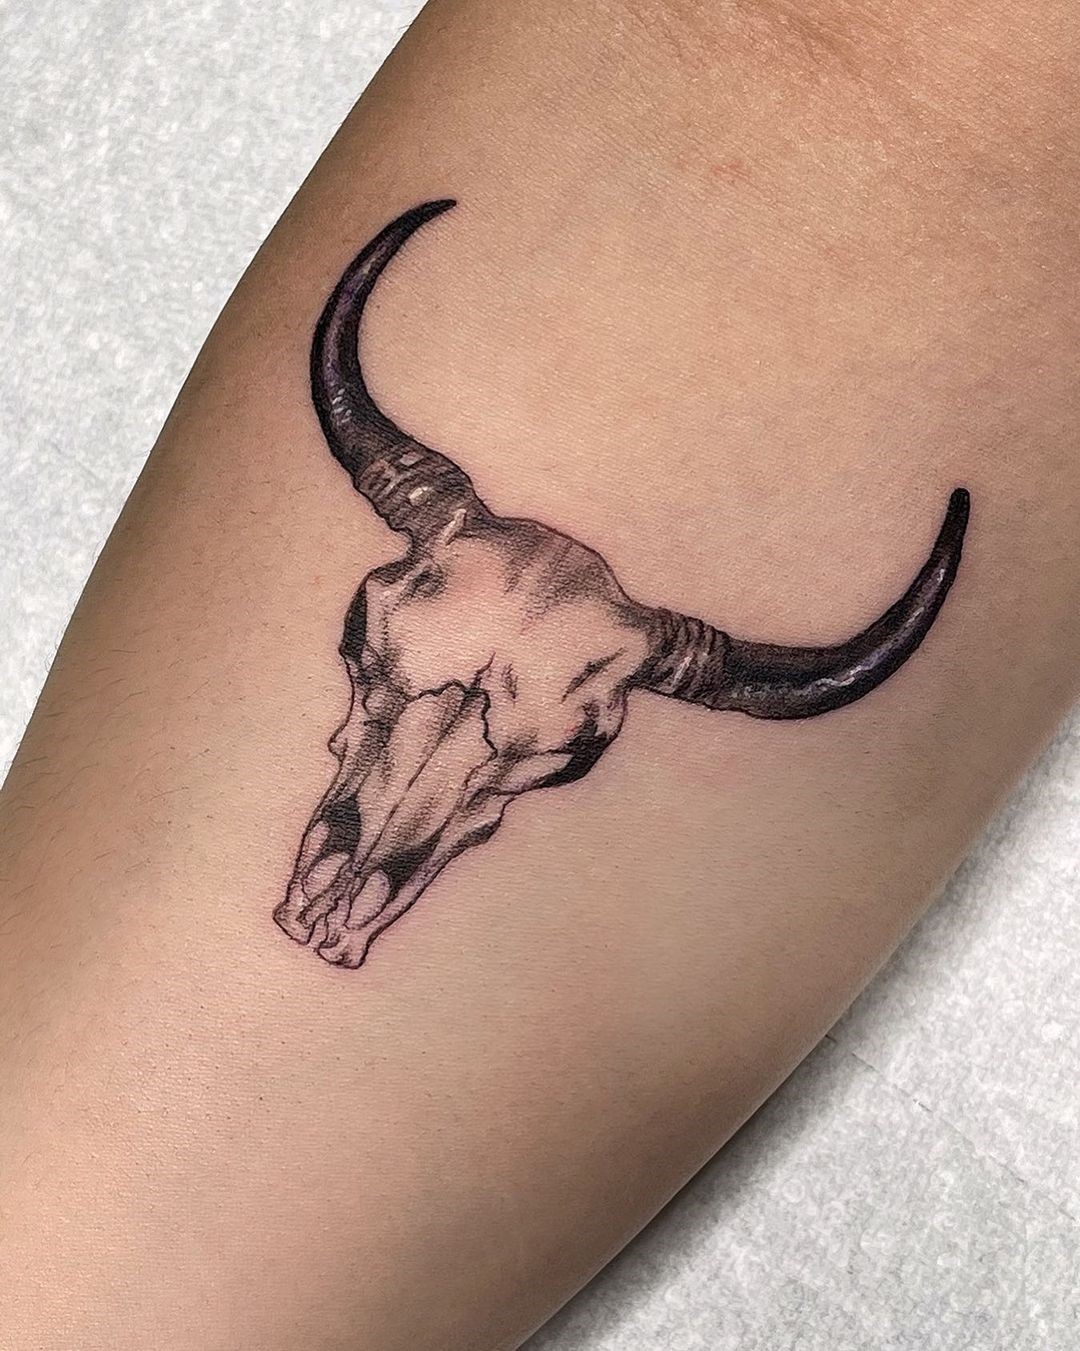 Brahma Bull Tattoo Design